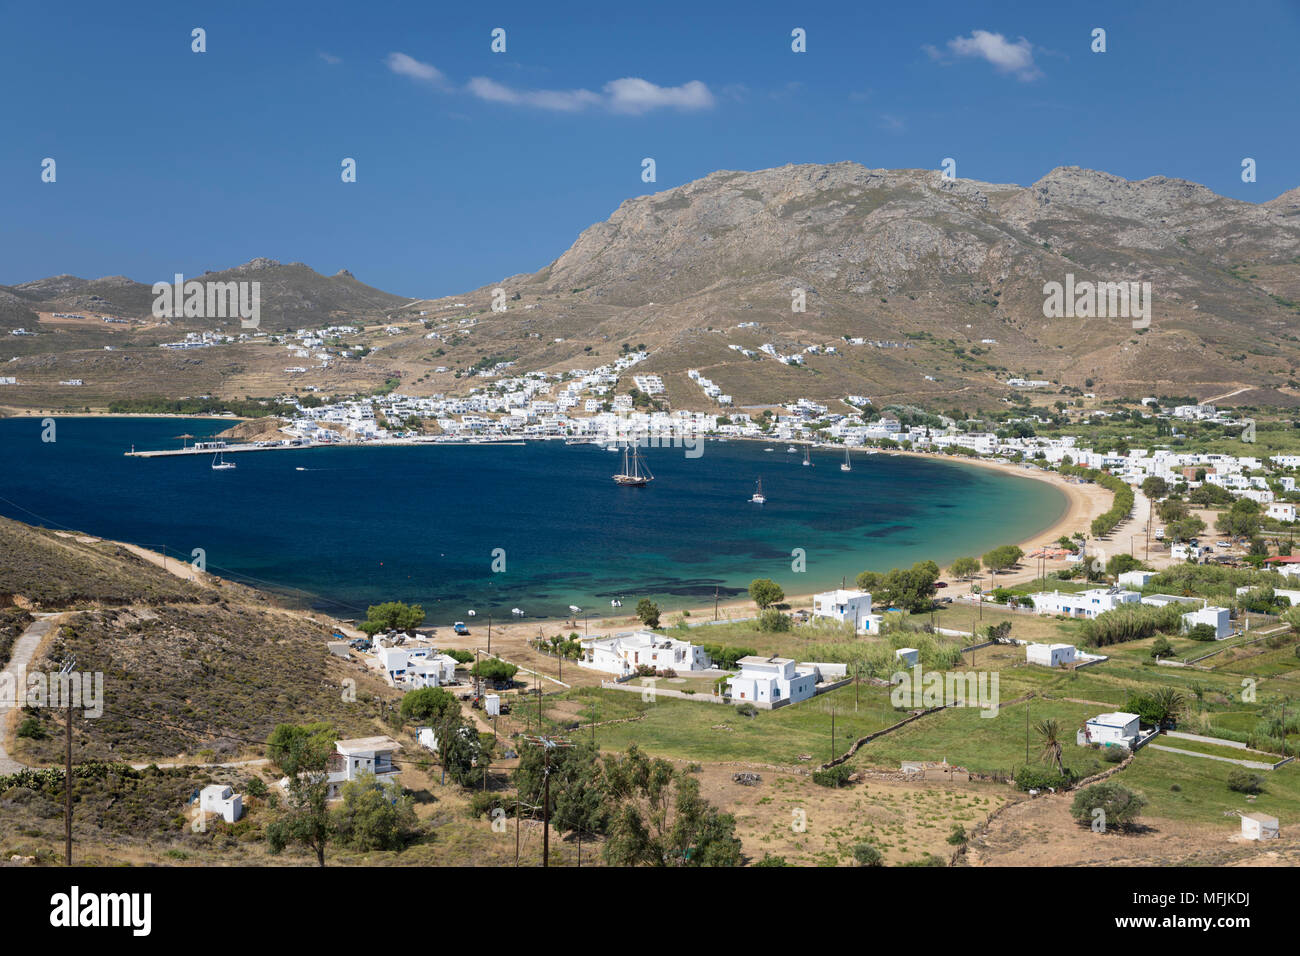 Vue sur la baie de Livadi, Serifos, Cyclades, Mer Égée, îles grecques, Grèce, Europe Banque D'Images